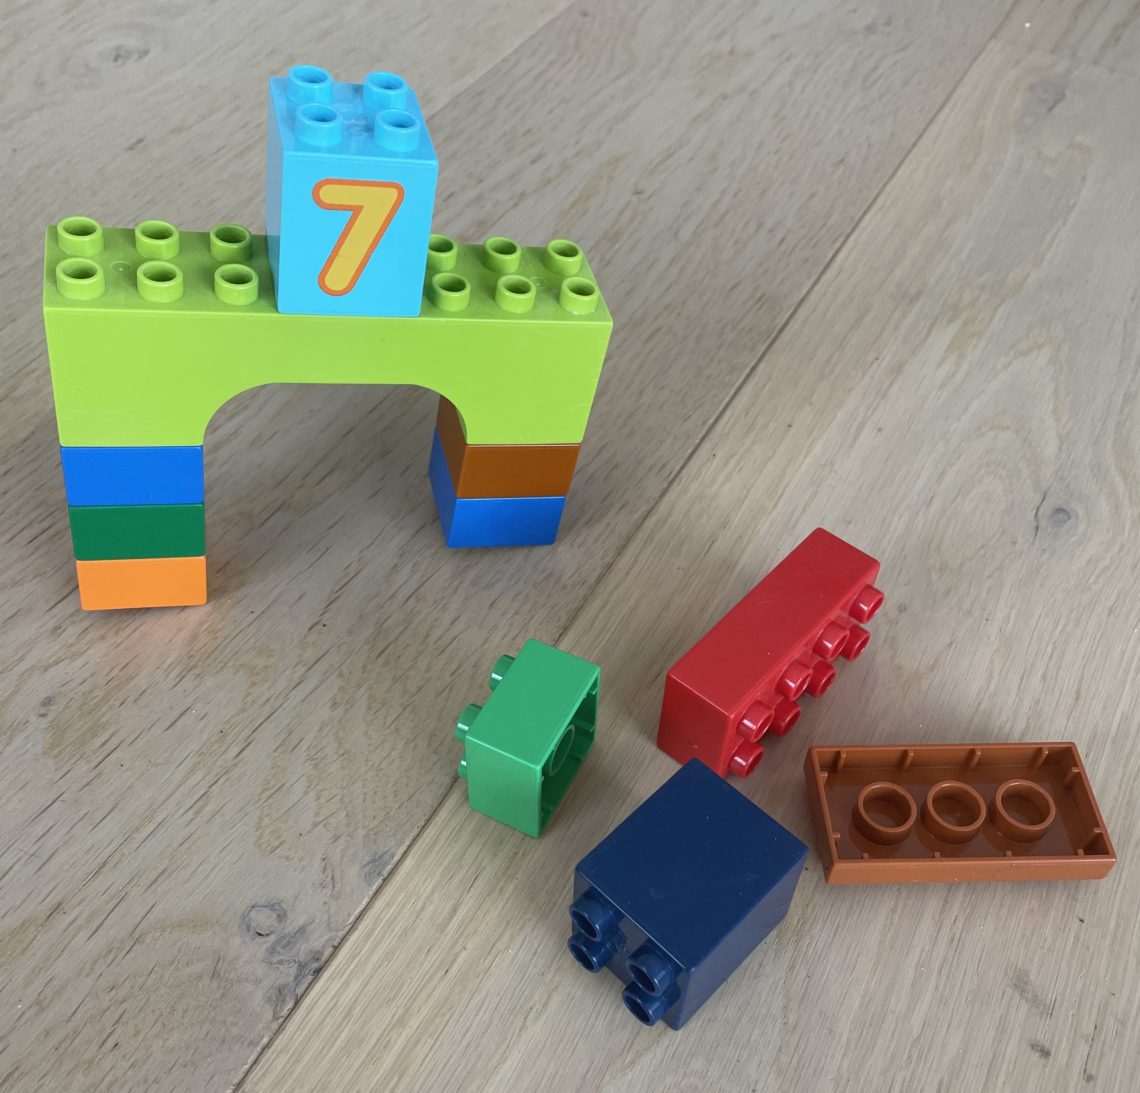 Lego problemløsning eksperiment